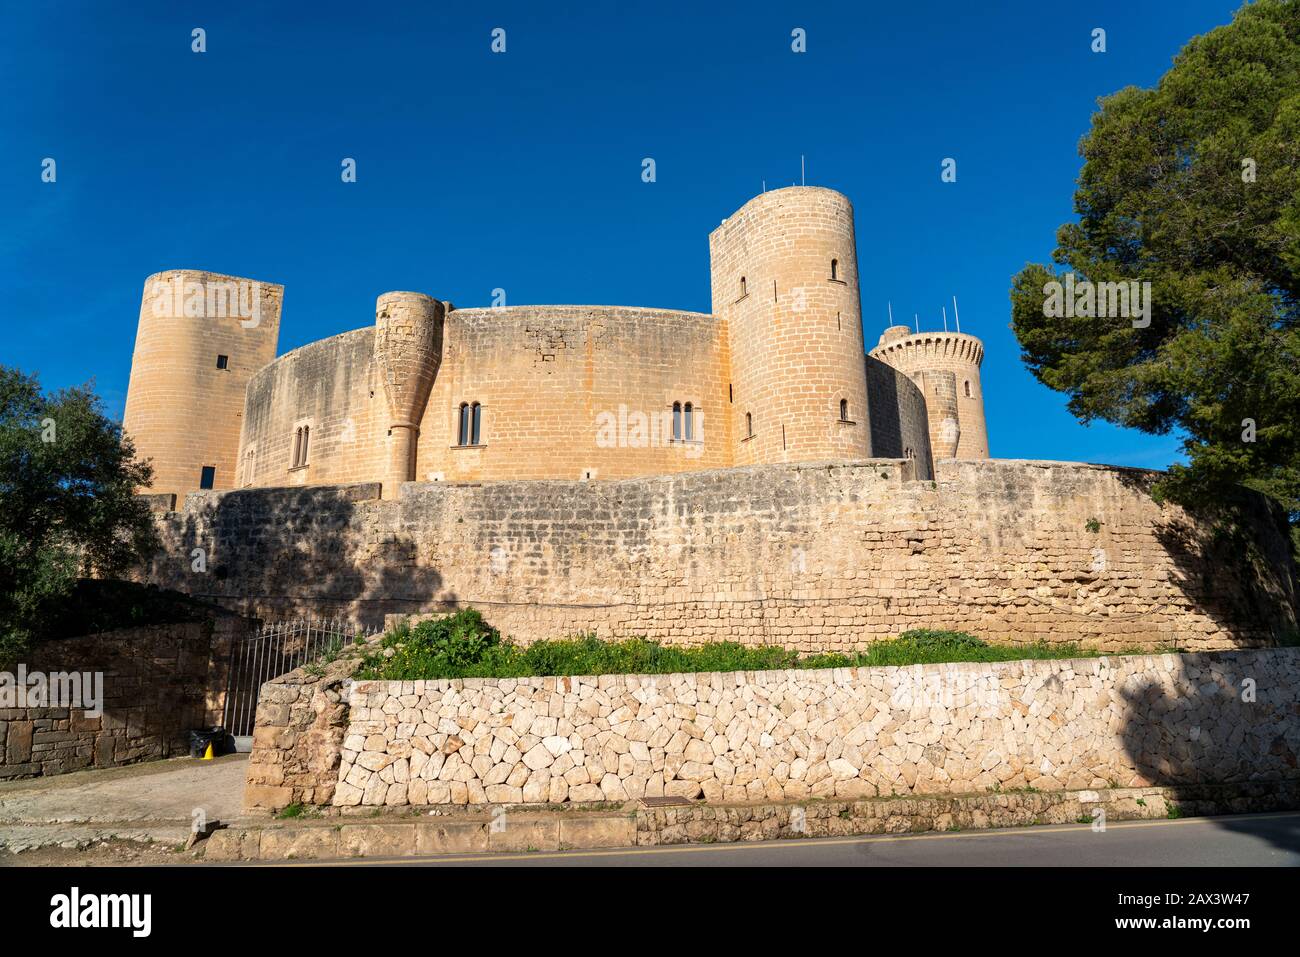 Castell de Bellver, fortress above Palma de Mallorca, Spain, Stock Photo